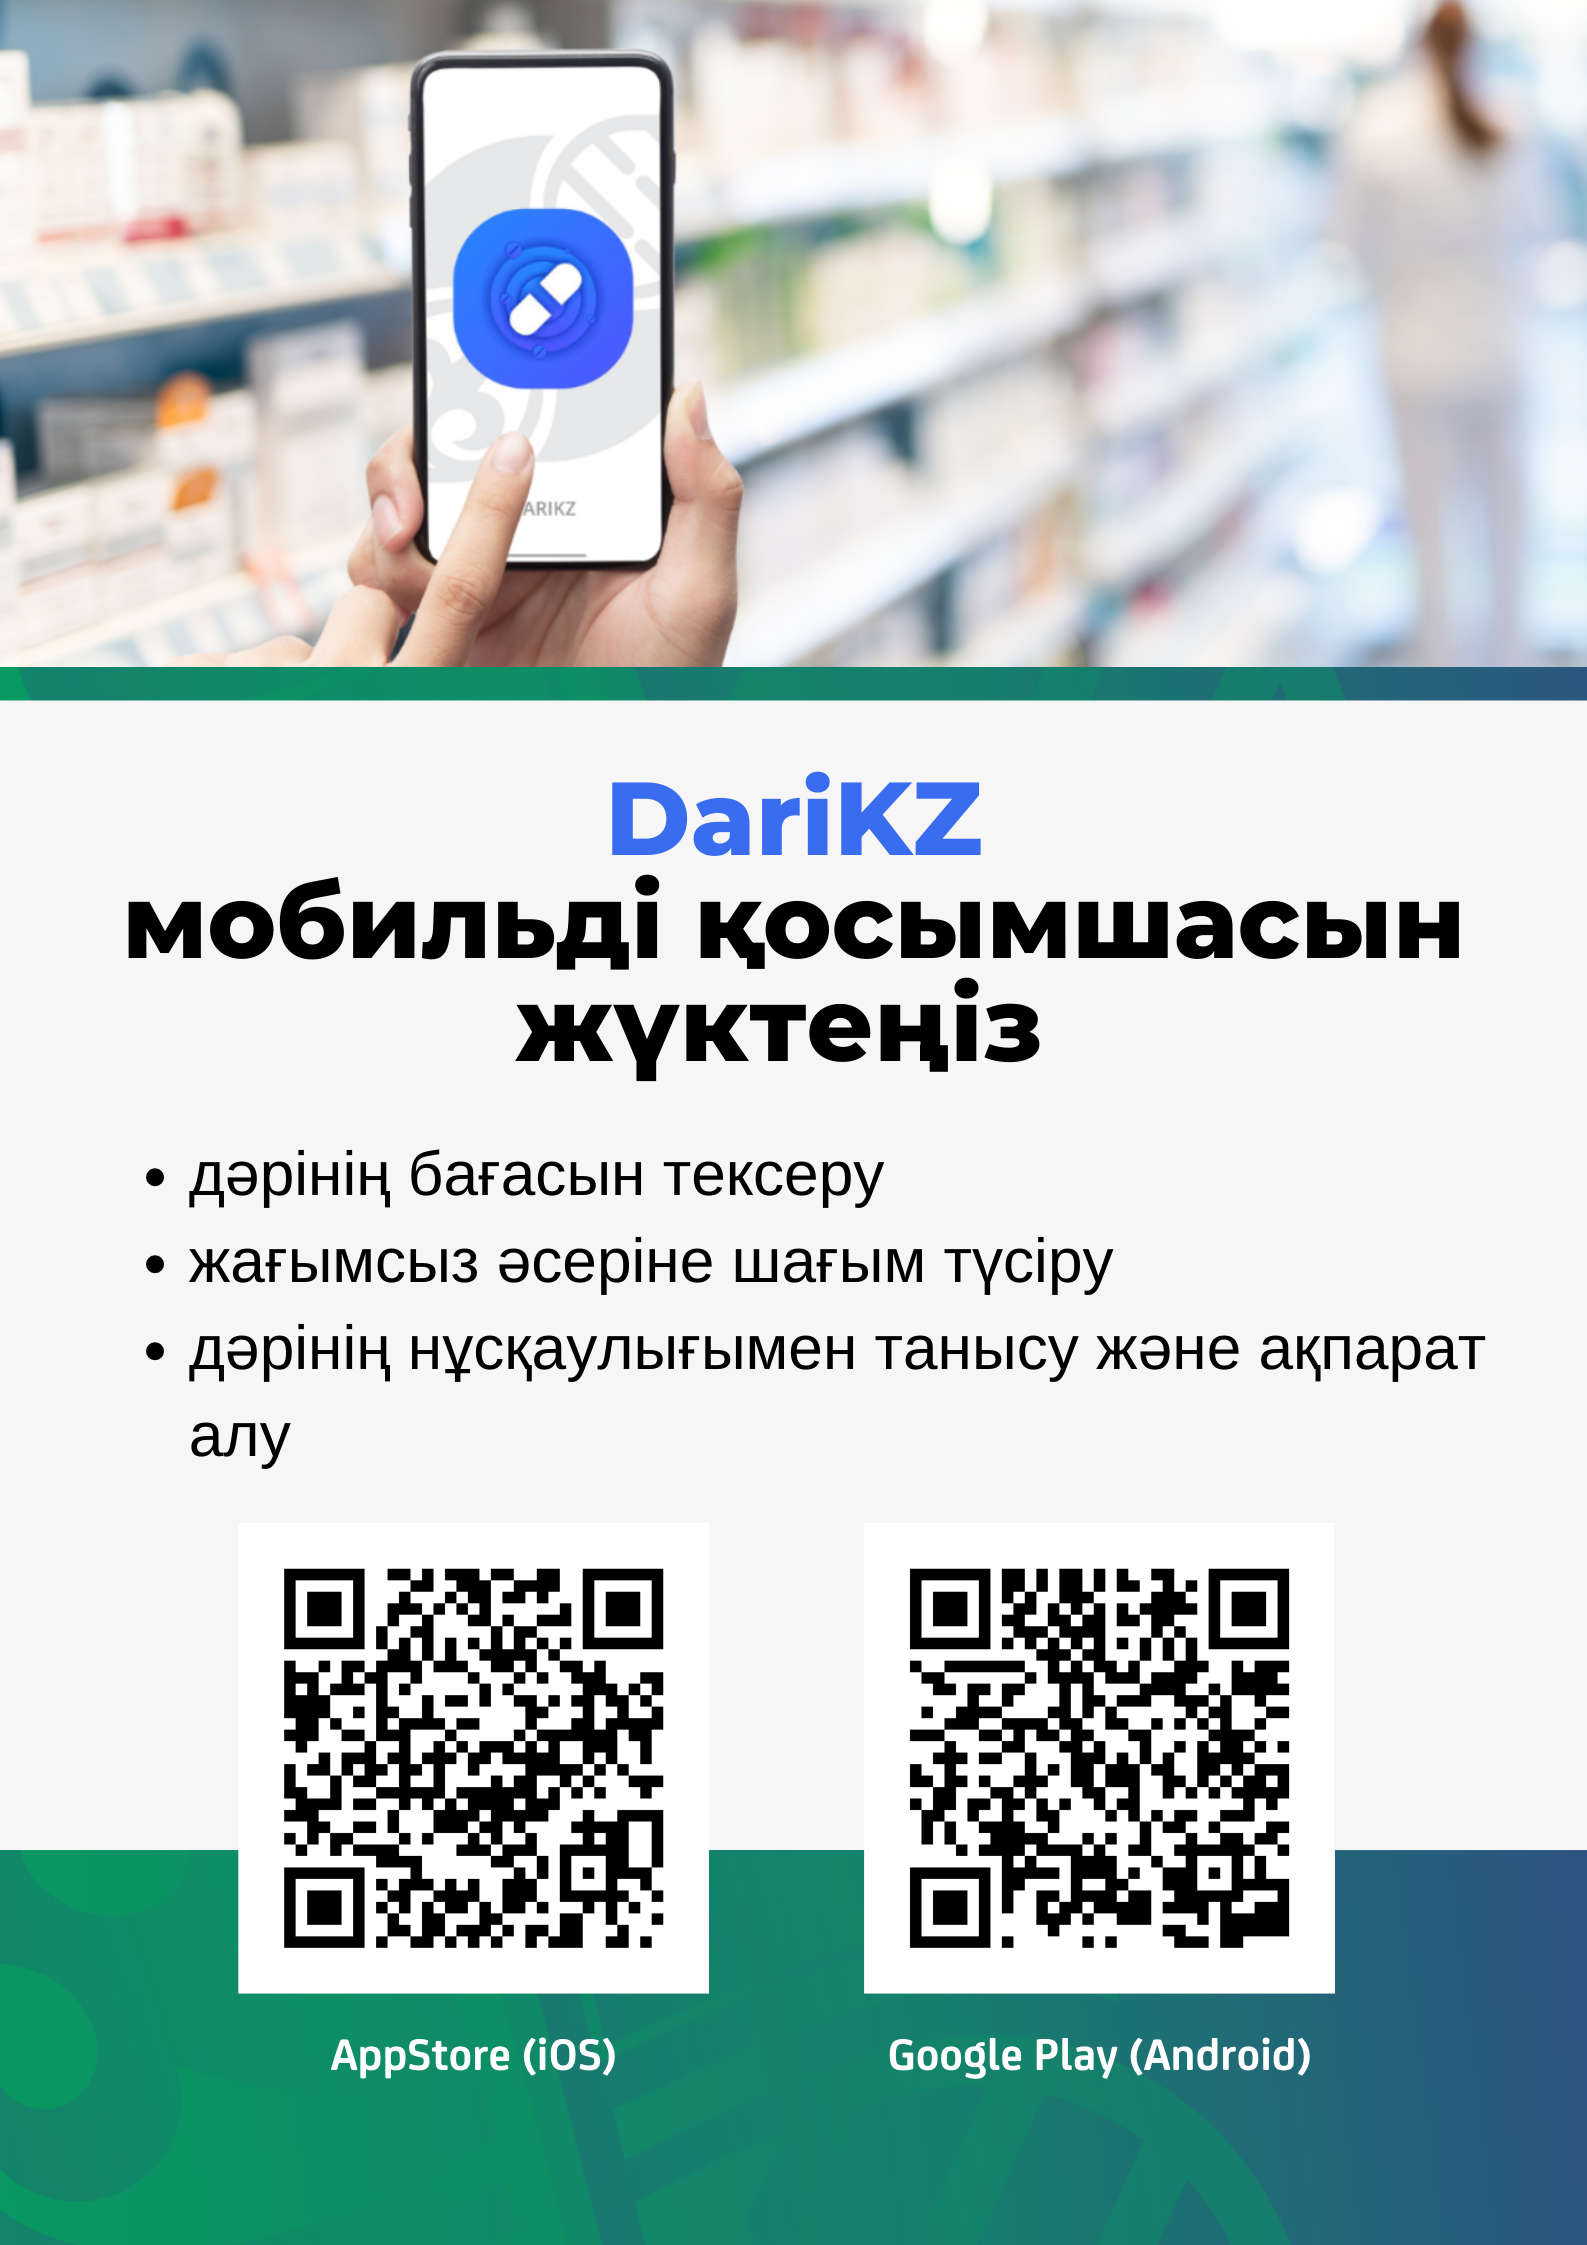 Казахстанцам стала доступна обновленная версия мобильного приложения DariKZ